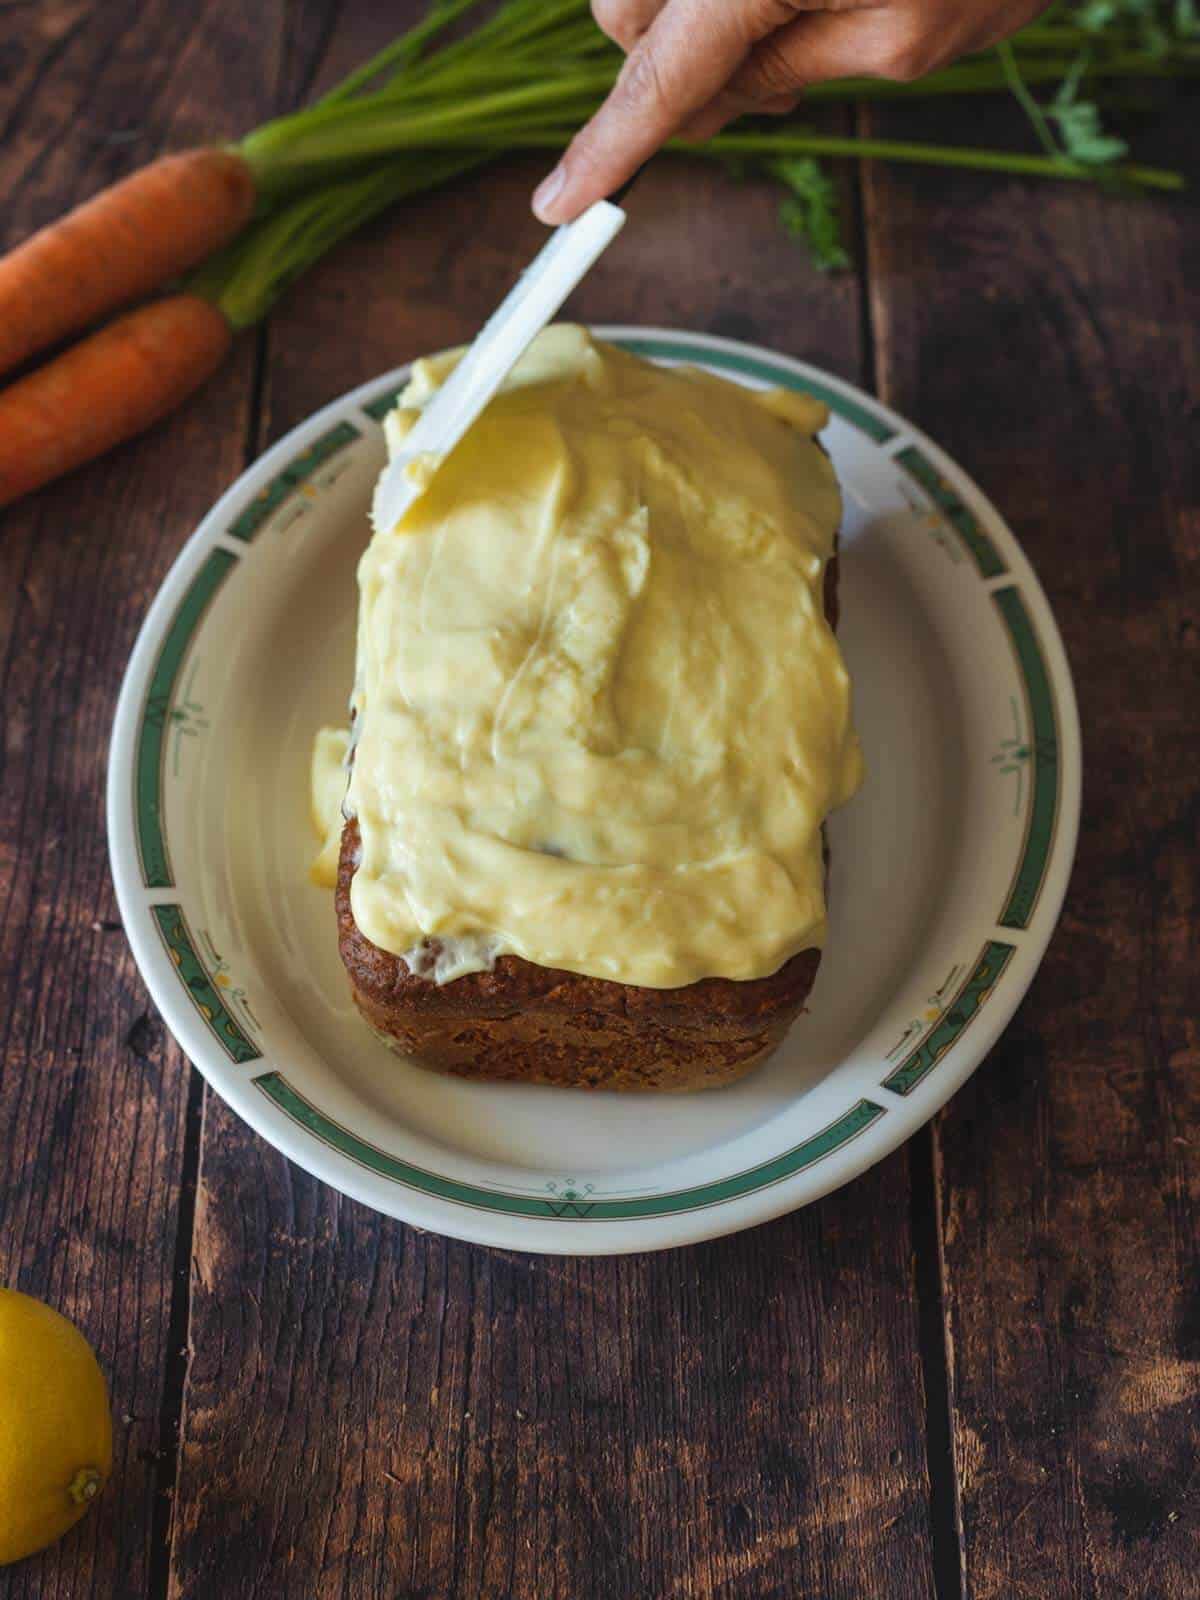 untando glaseado sobre la tarta de zanahoria con una espátula.